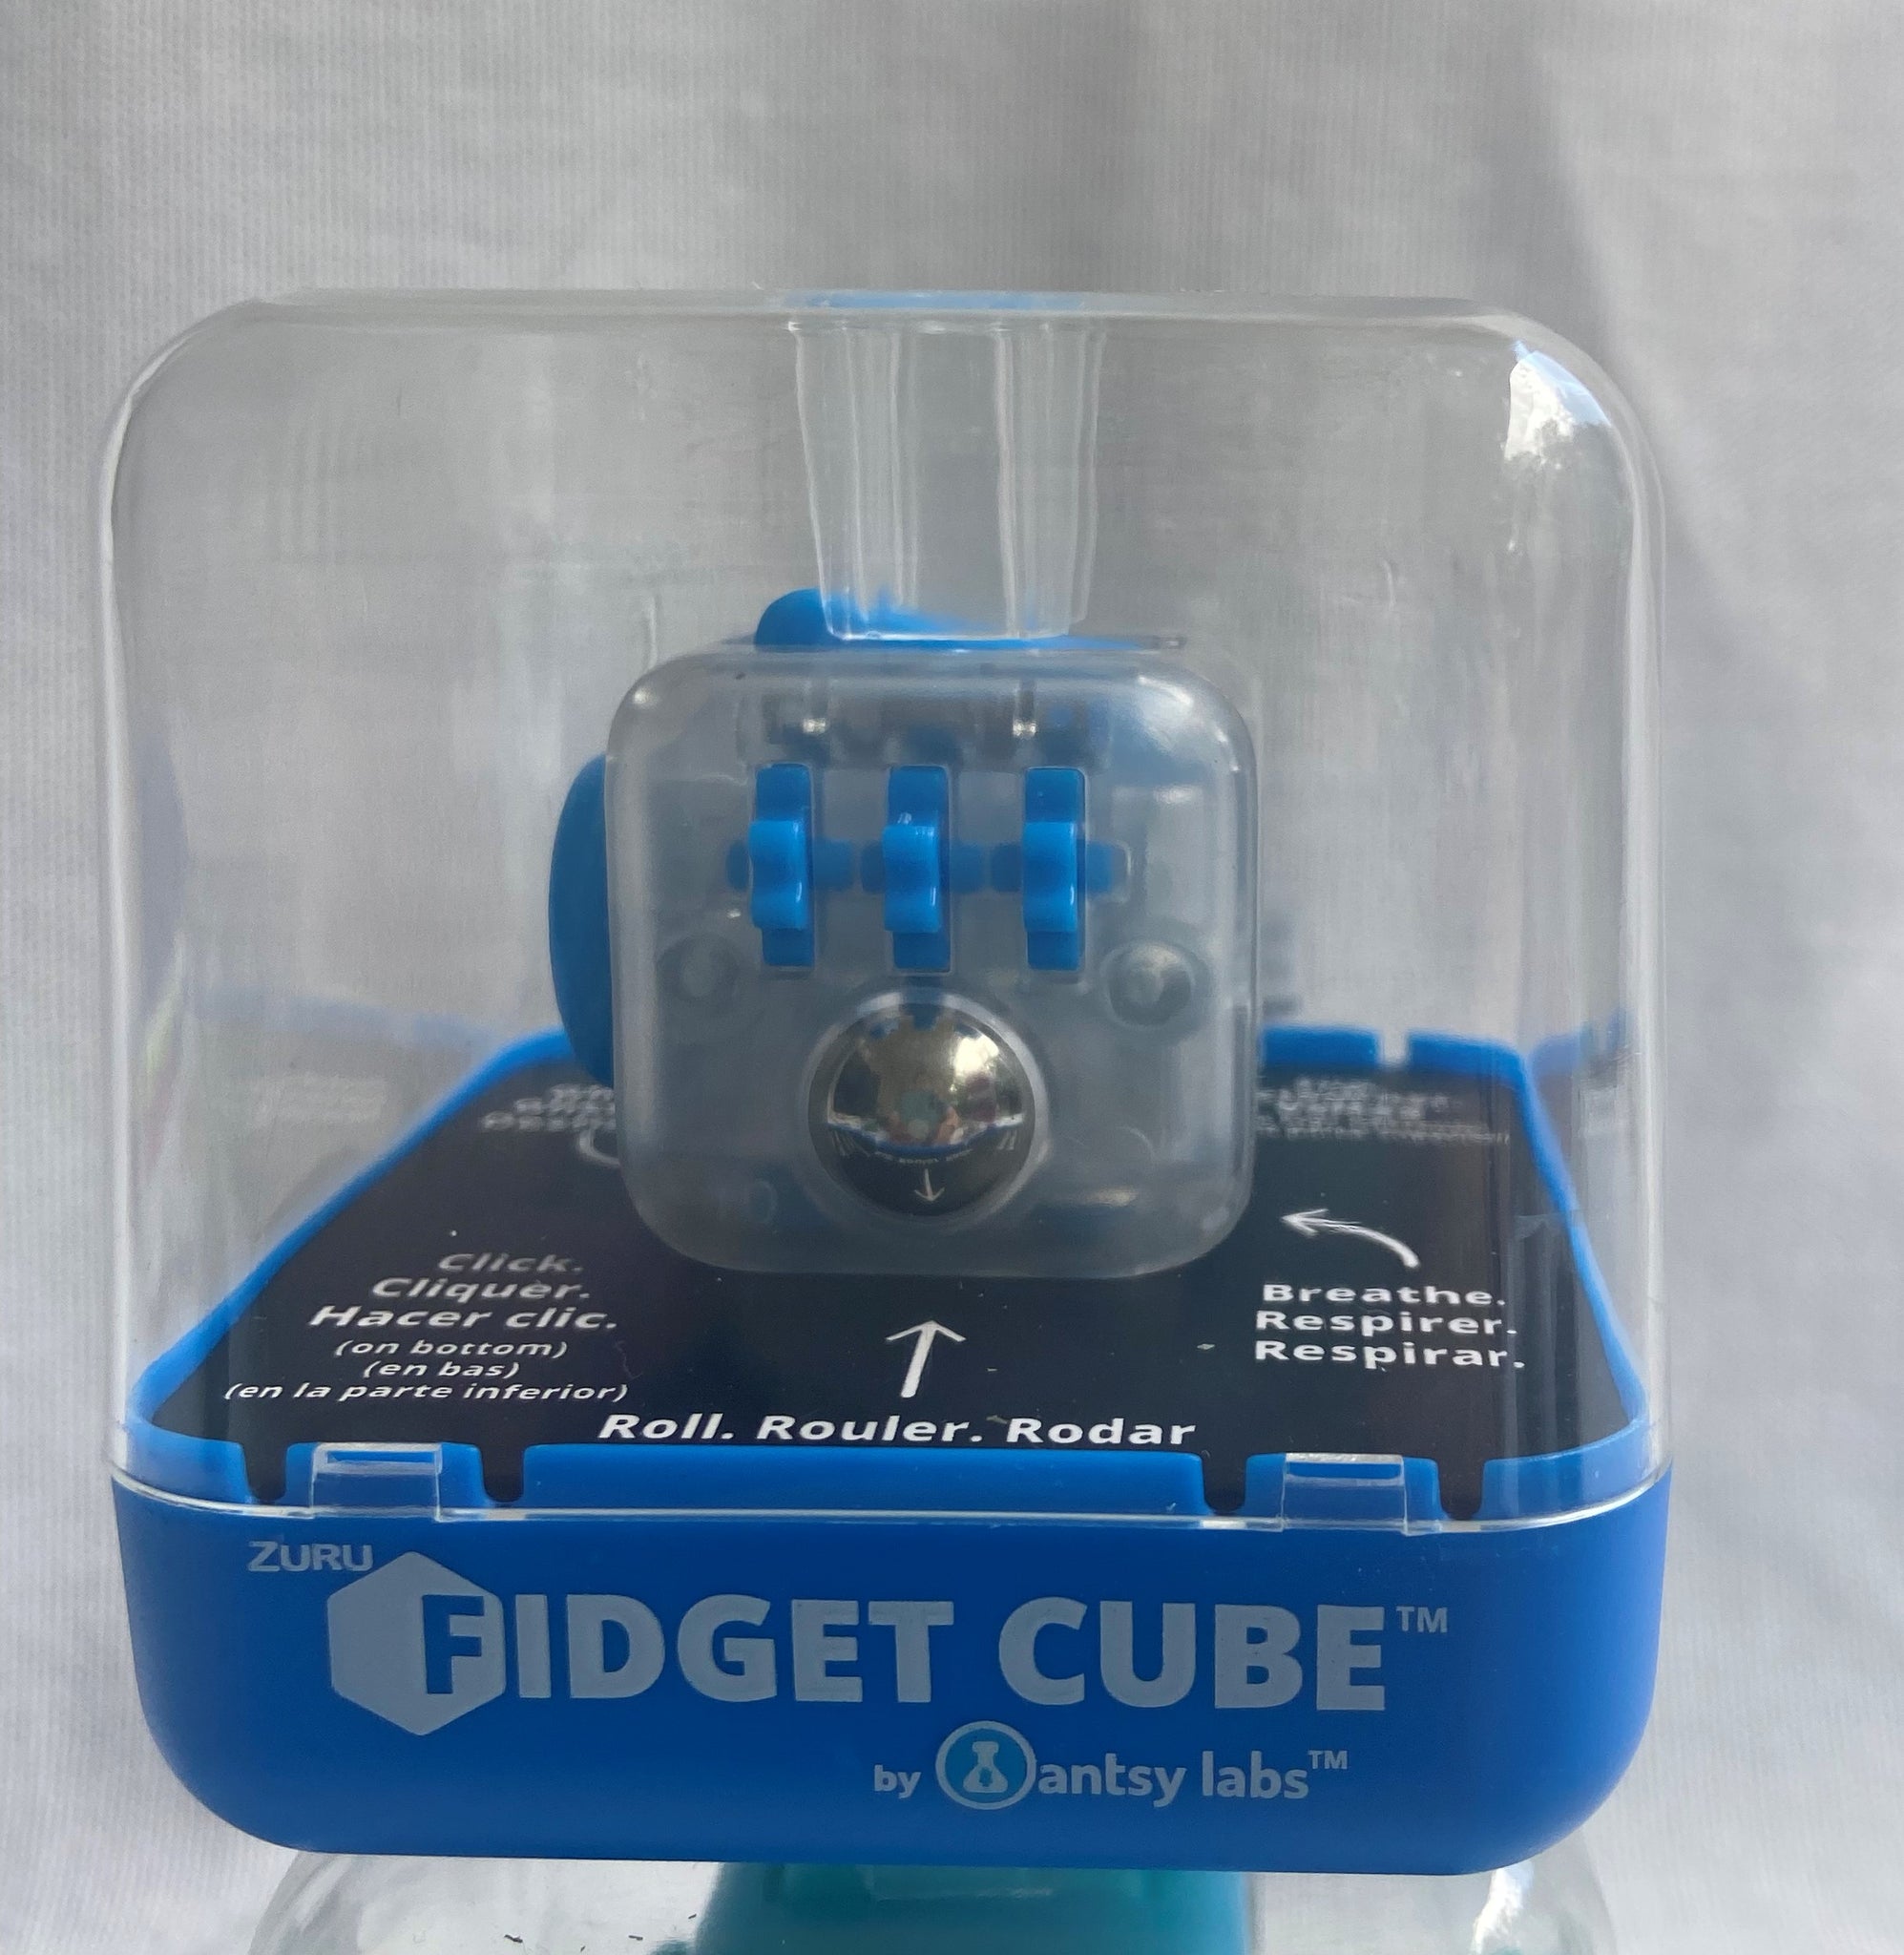 Zuru Zuru Fidget Cube Series 3